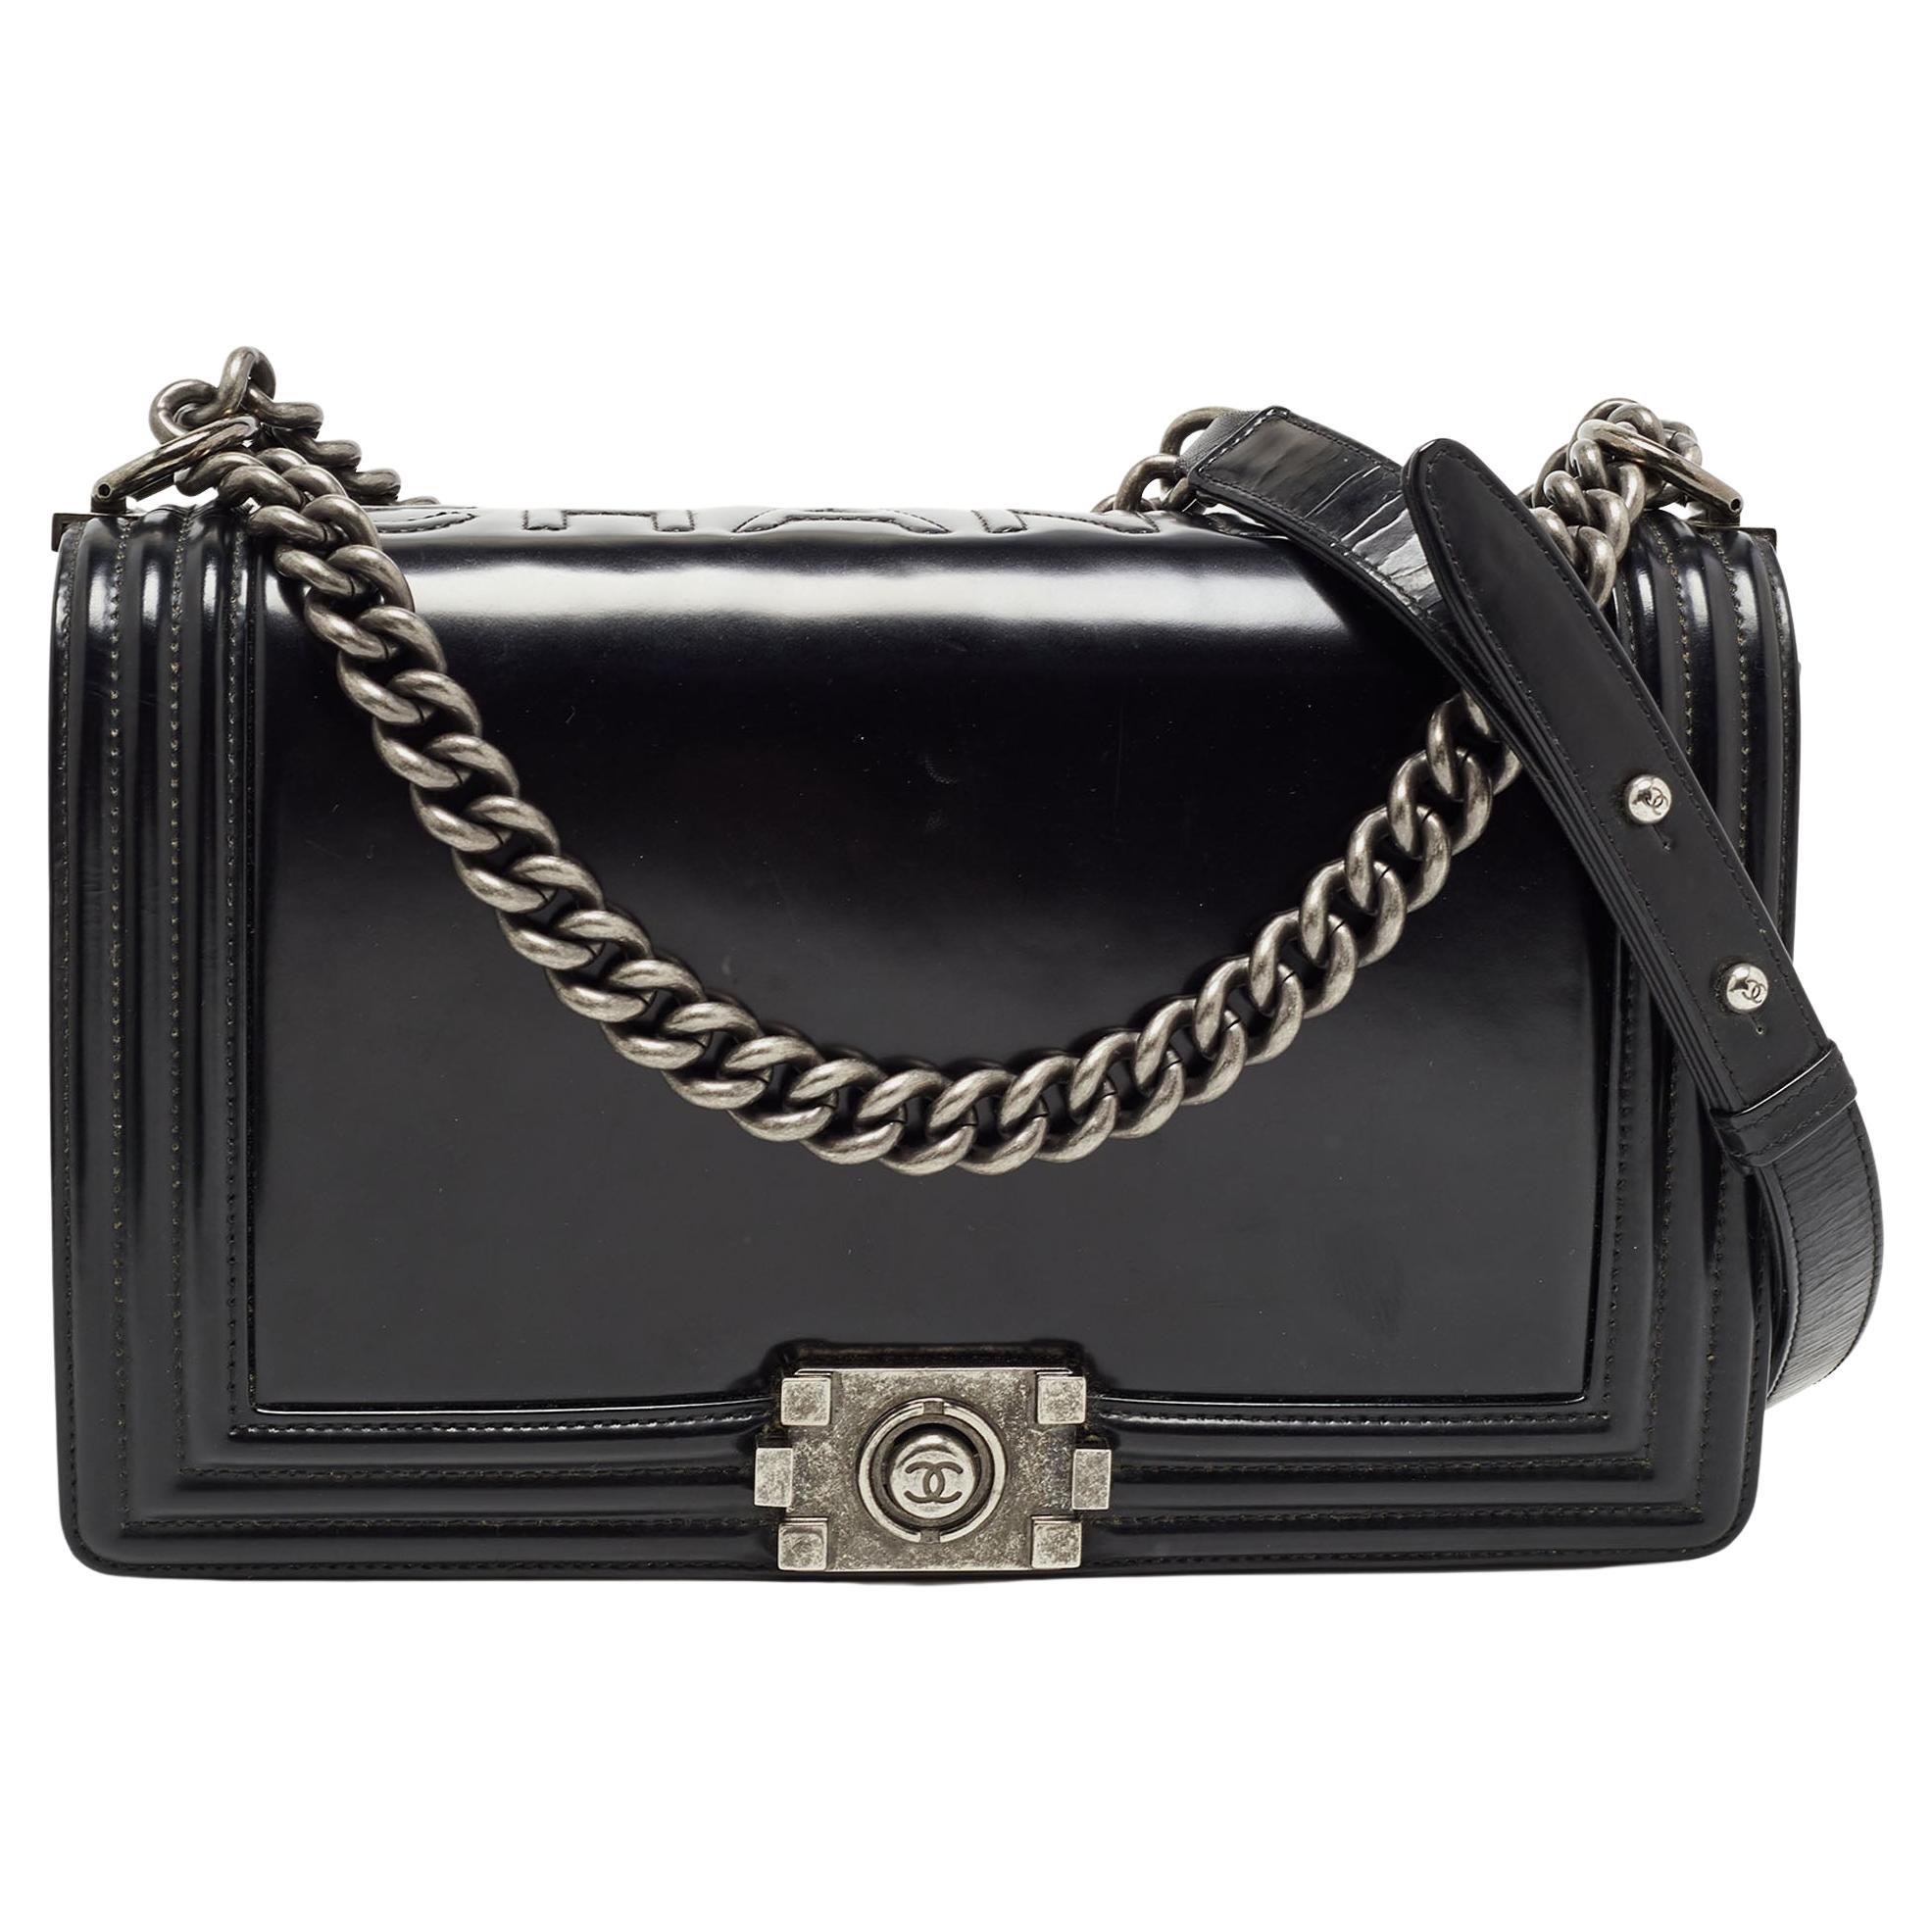 Chanel Black Glossy Leather New Medium Boy Bag